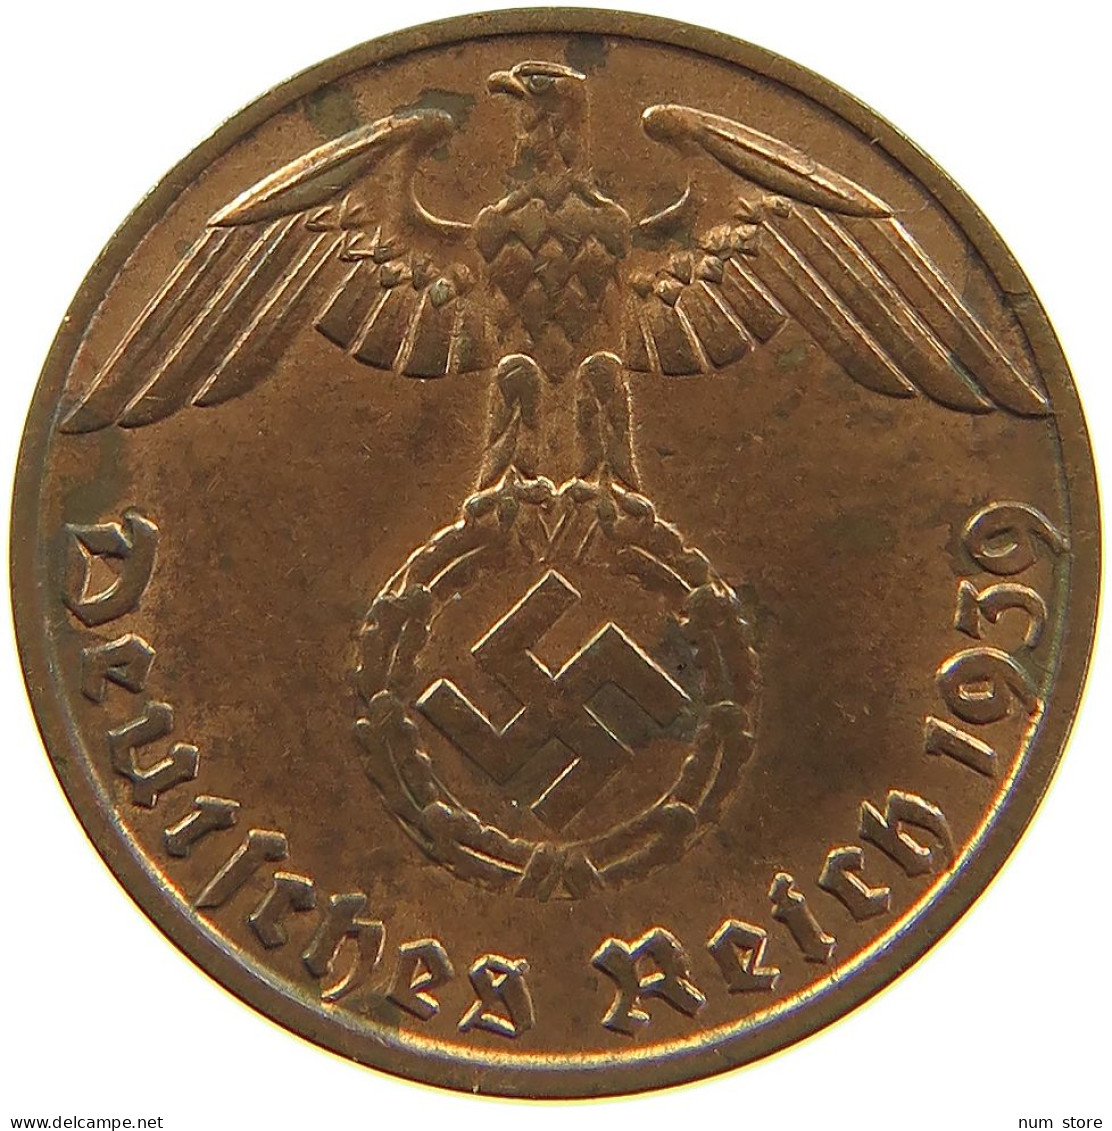 GERMANY 1 REICHSPFENNIG 1939 B #s083 0735 - 1 Reichspfennig